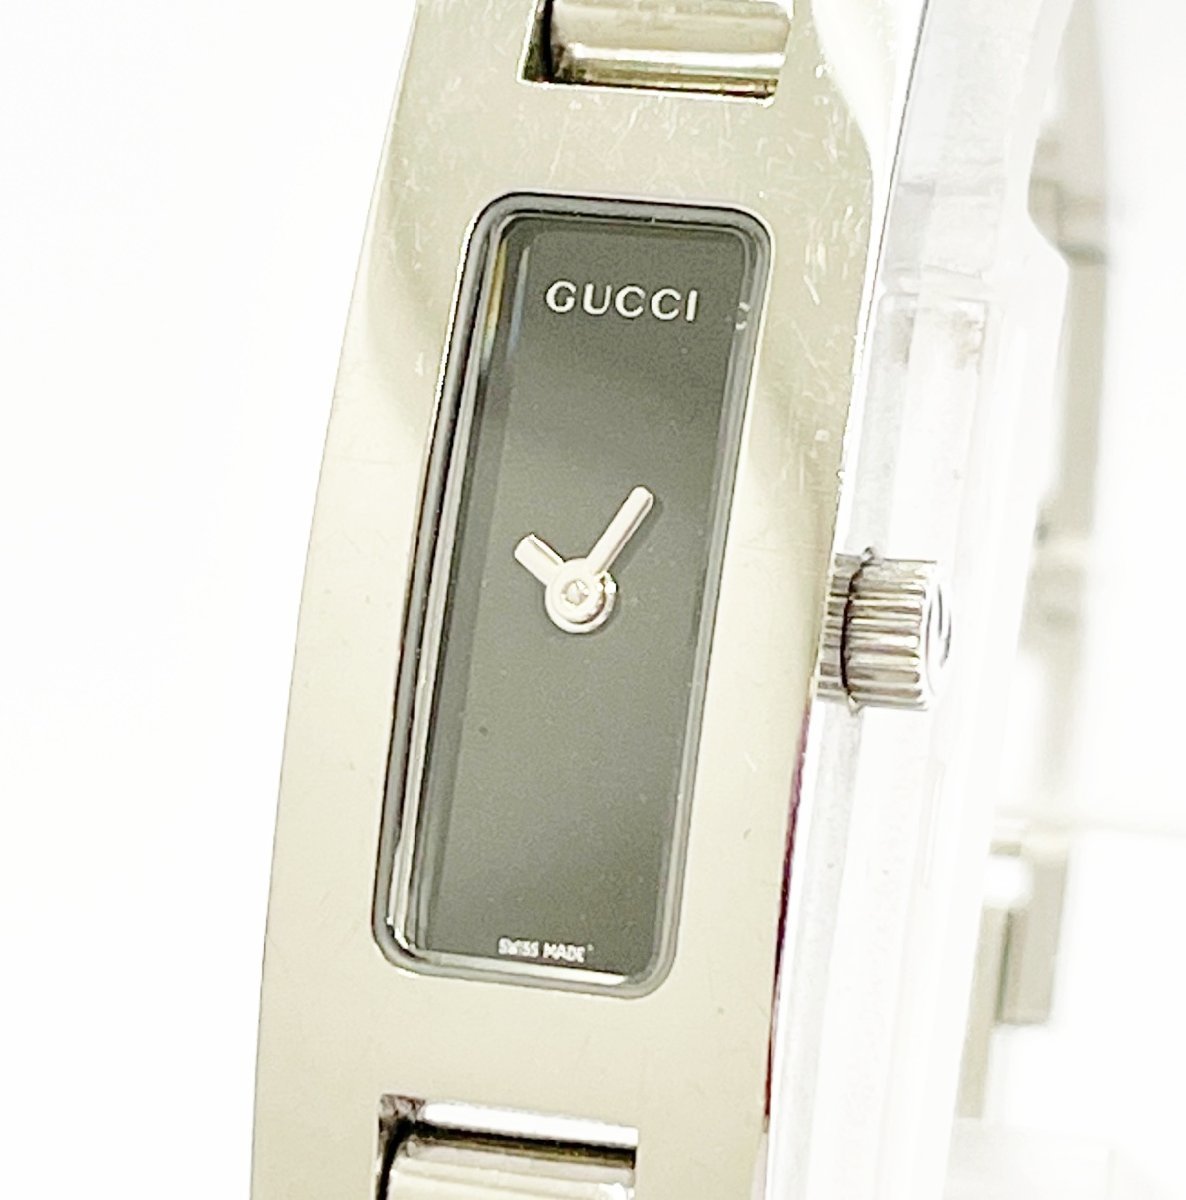 Gucci 3900l Swiss watch